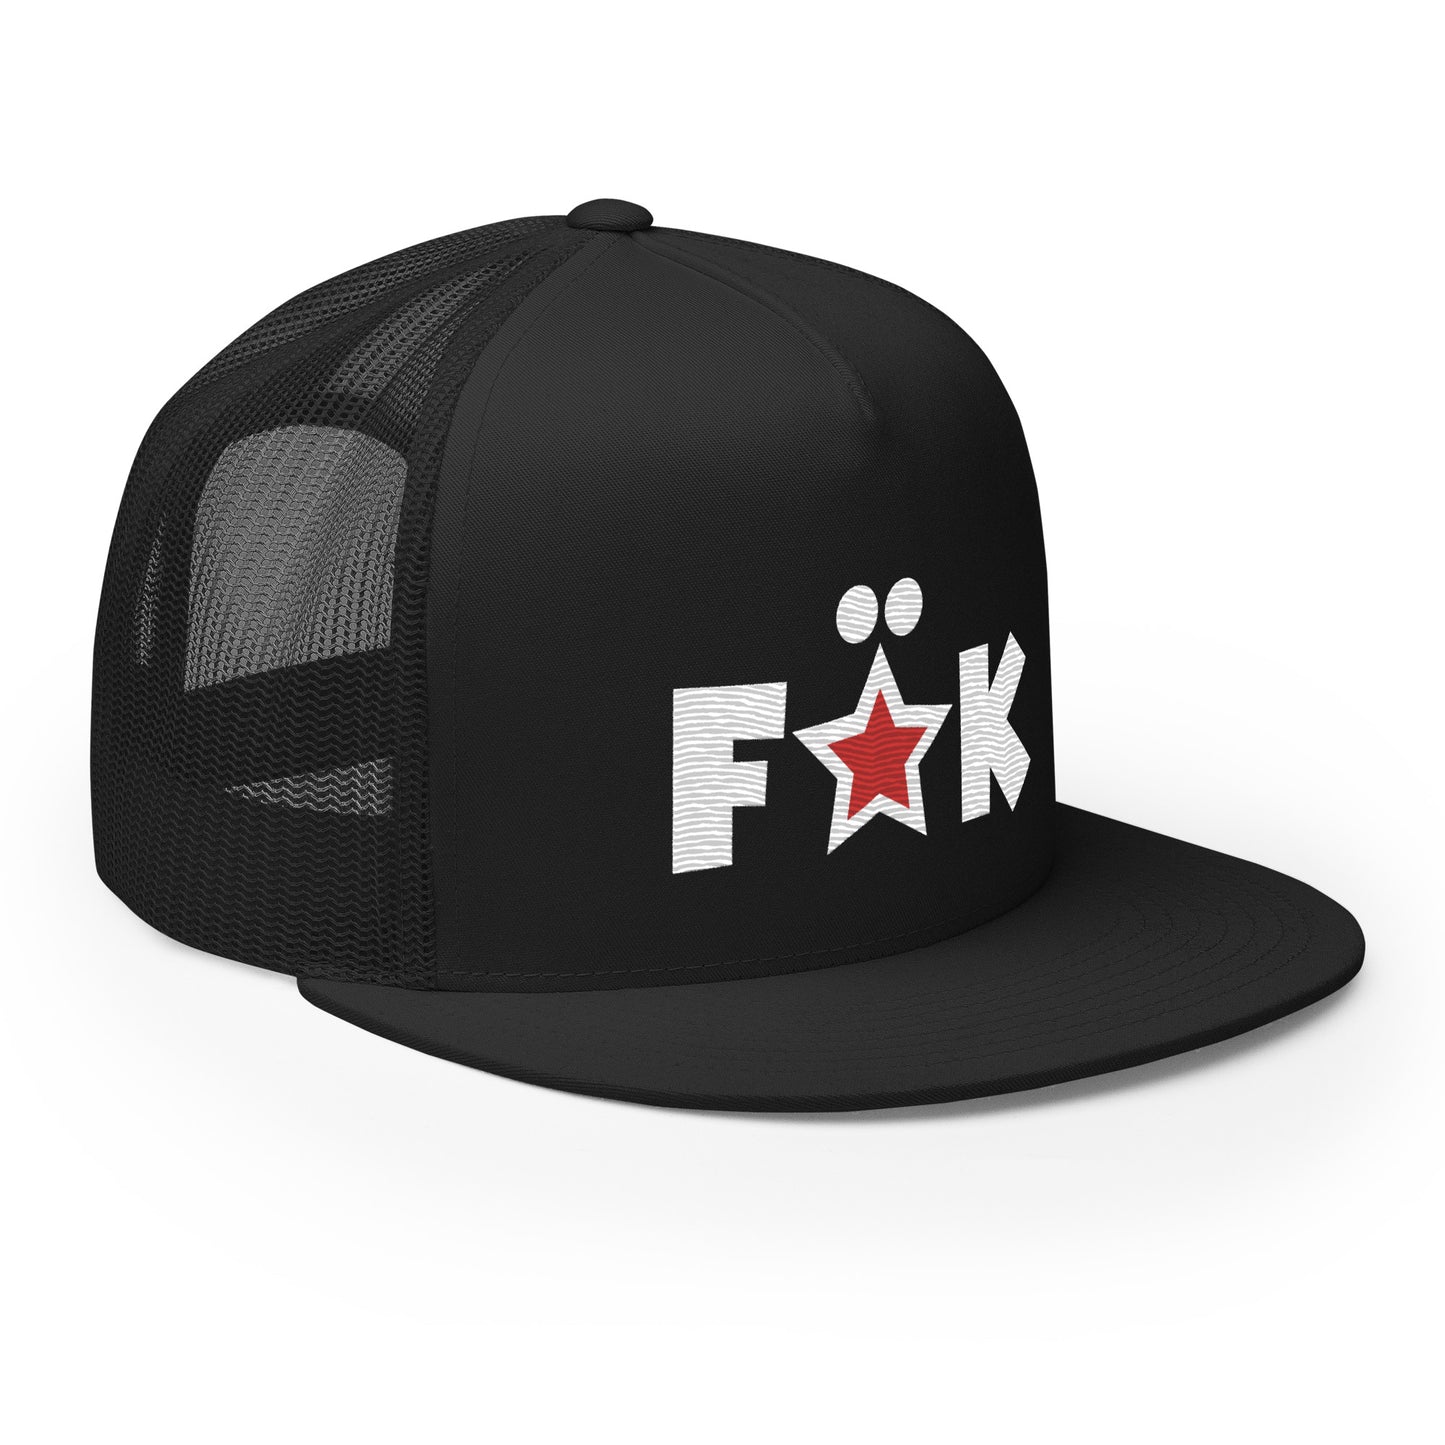 FCKSTR Hat / Trucker Cap III